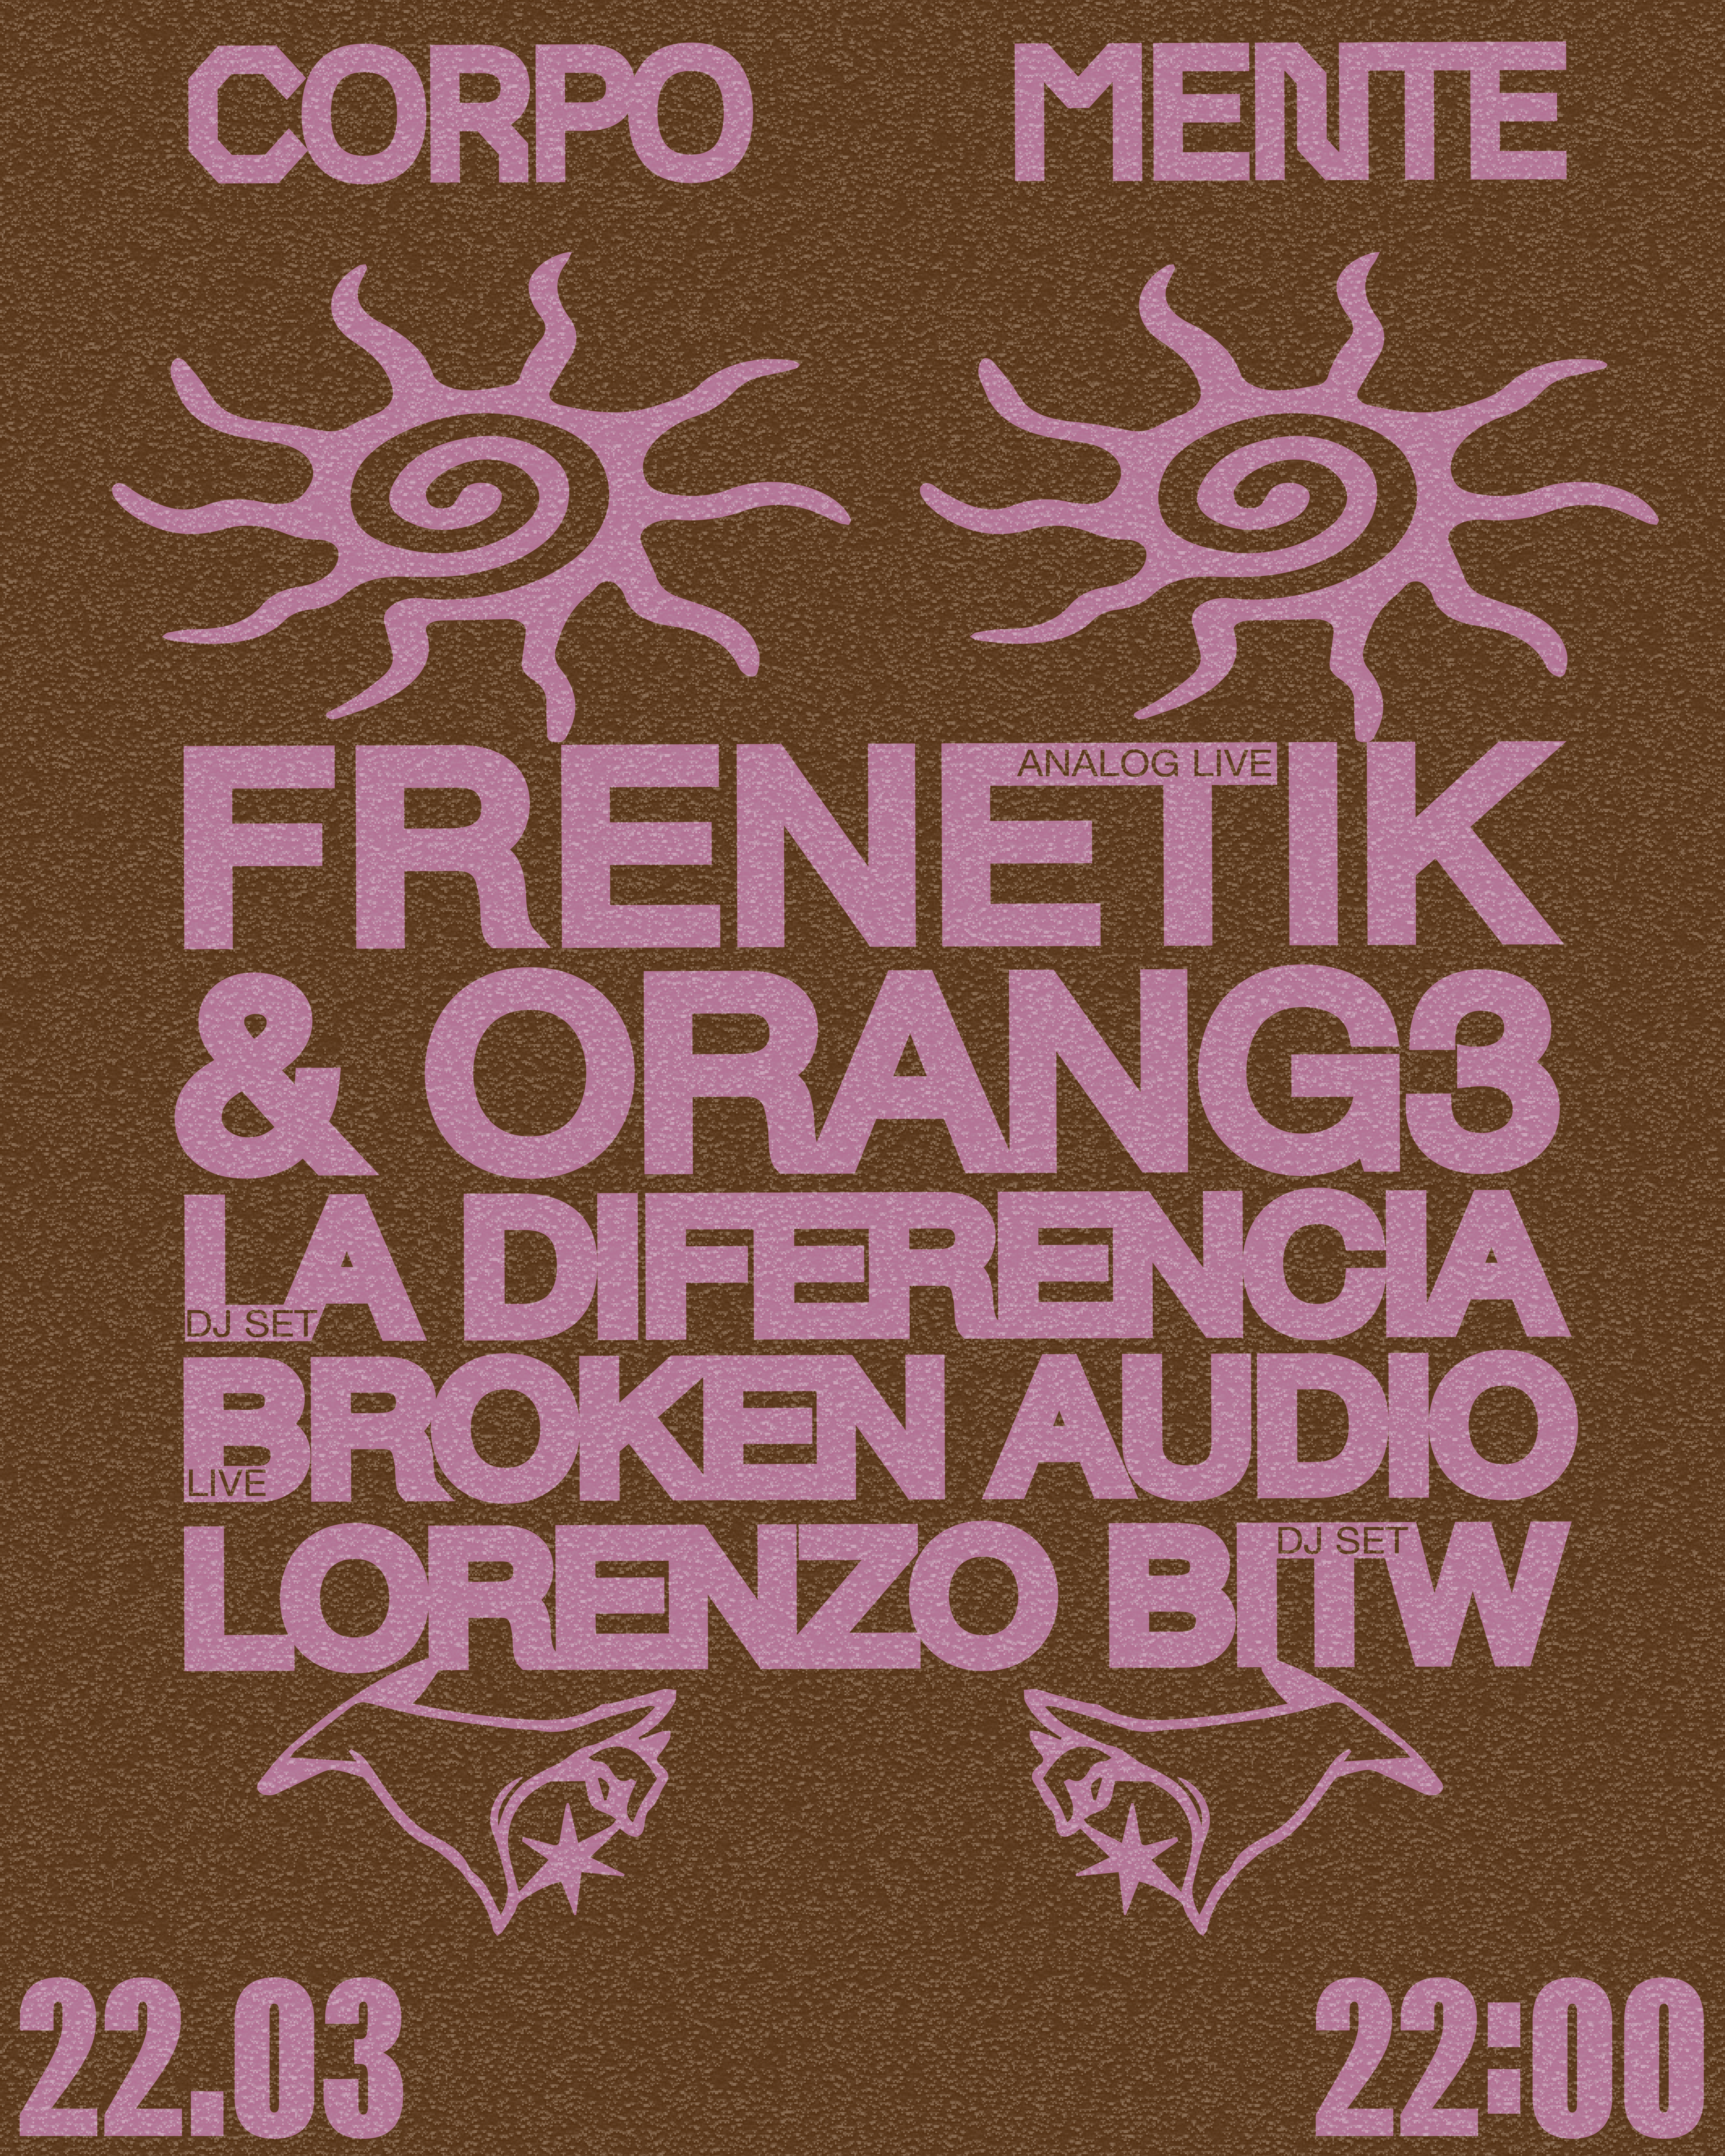 La Redazione / Corpo Mente #3 - Frenetik & Orang3, Lorenzo BITW, La Diferencia, Broken Audio - Página frontal